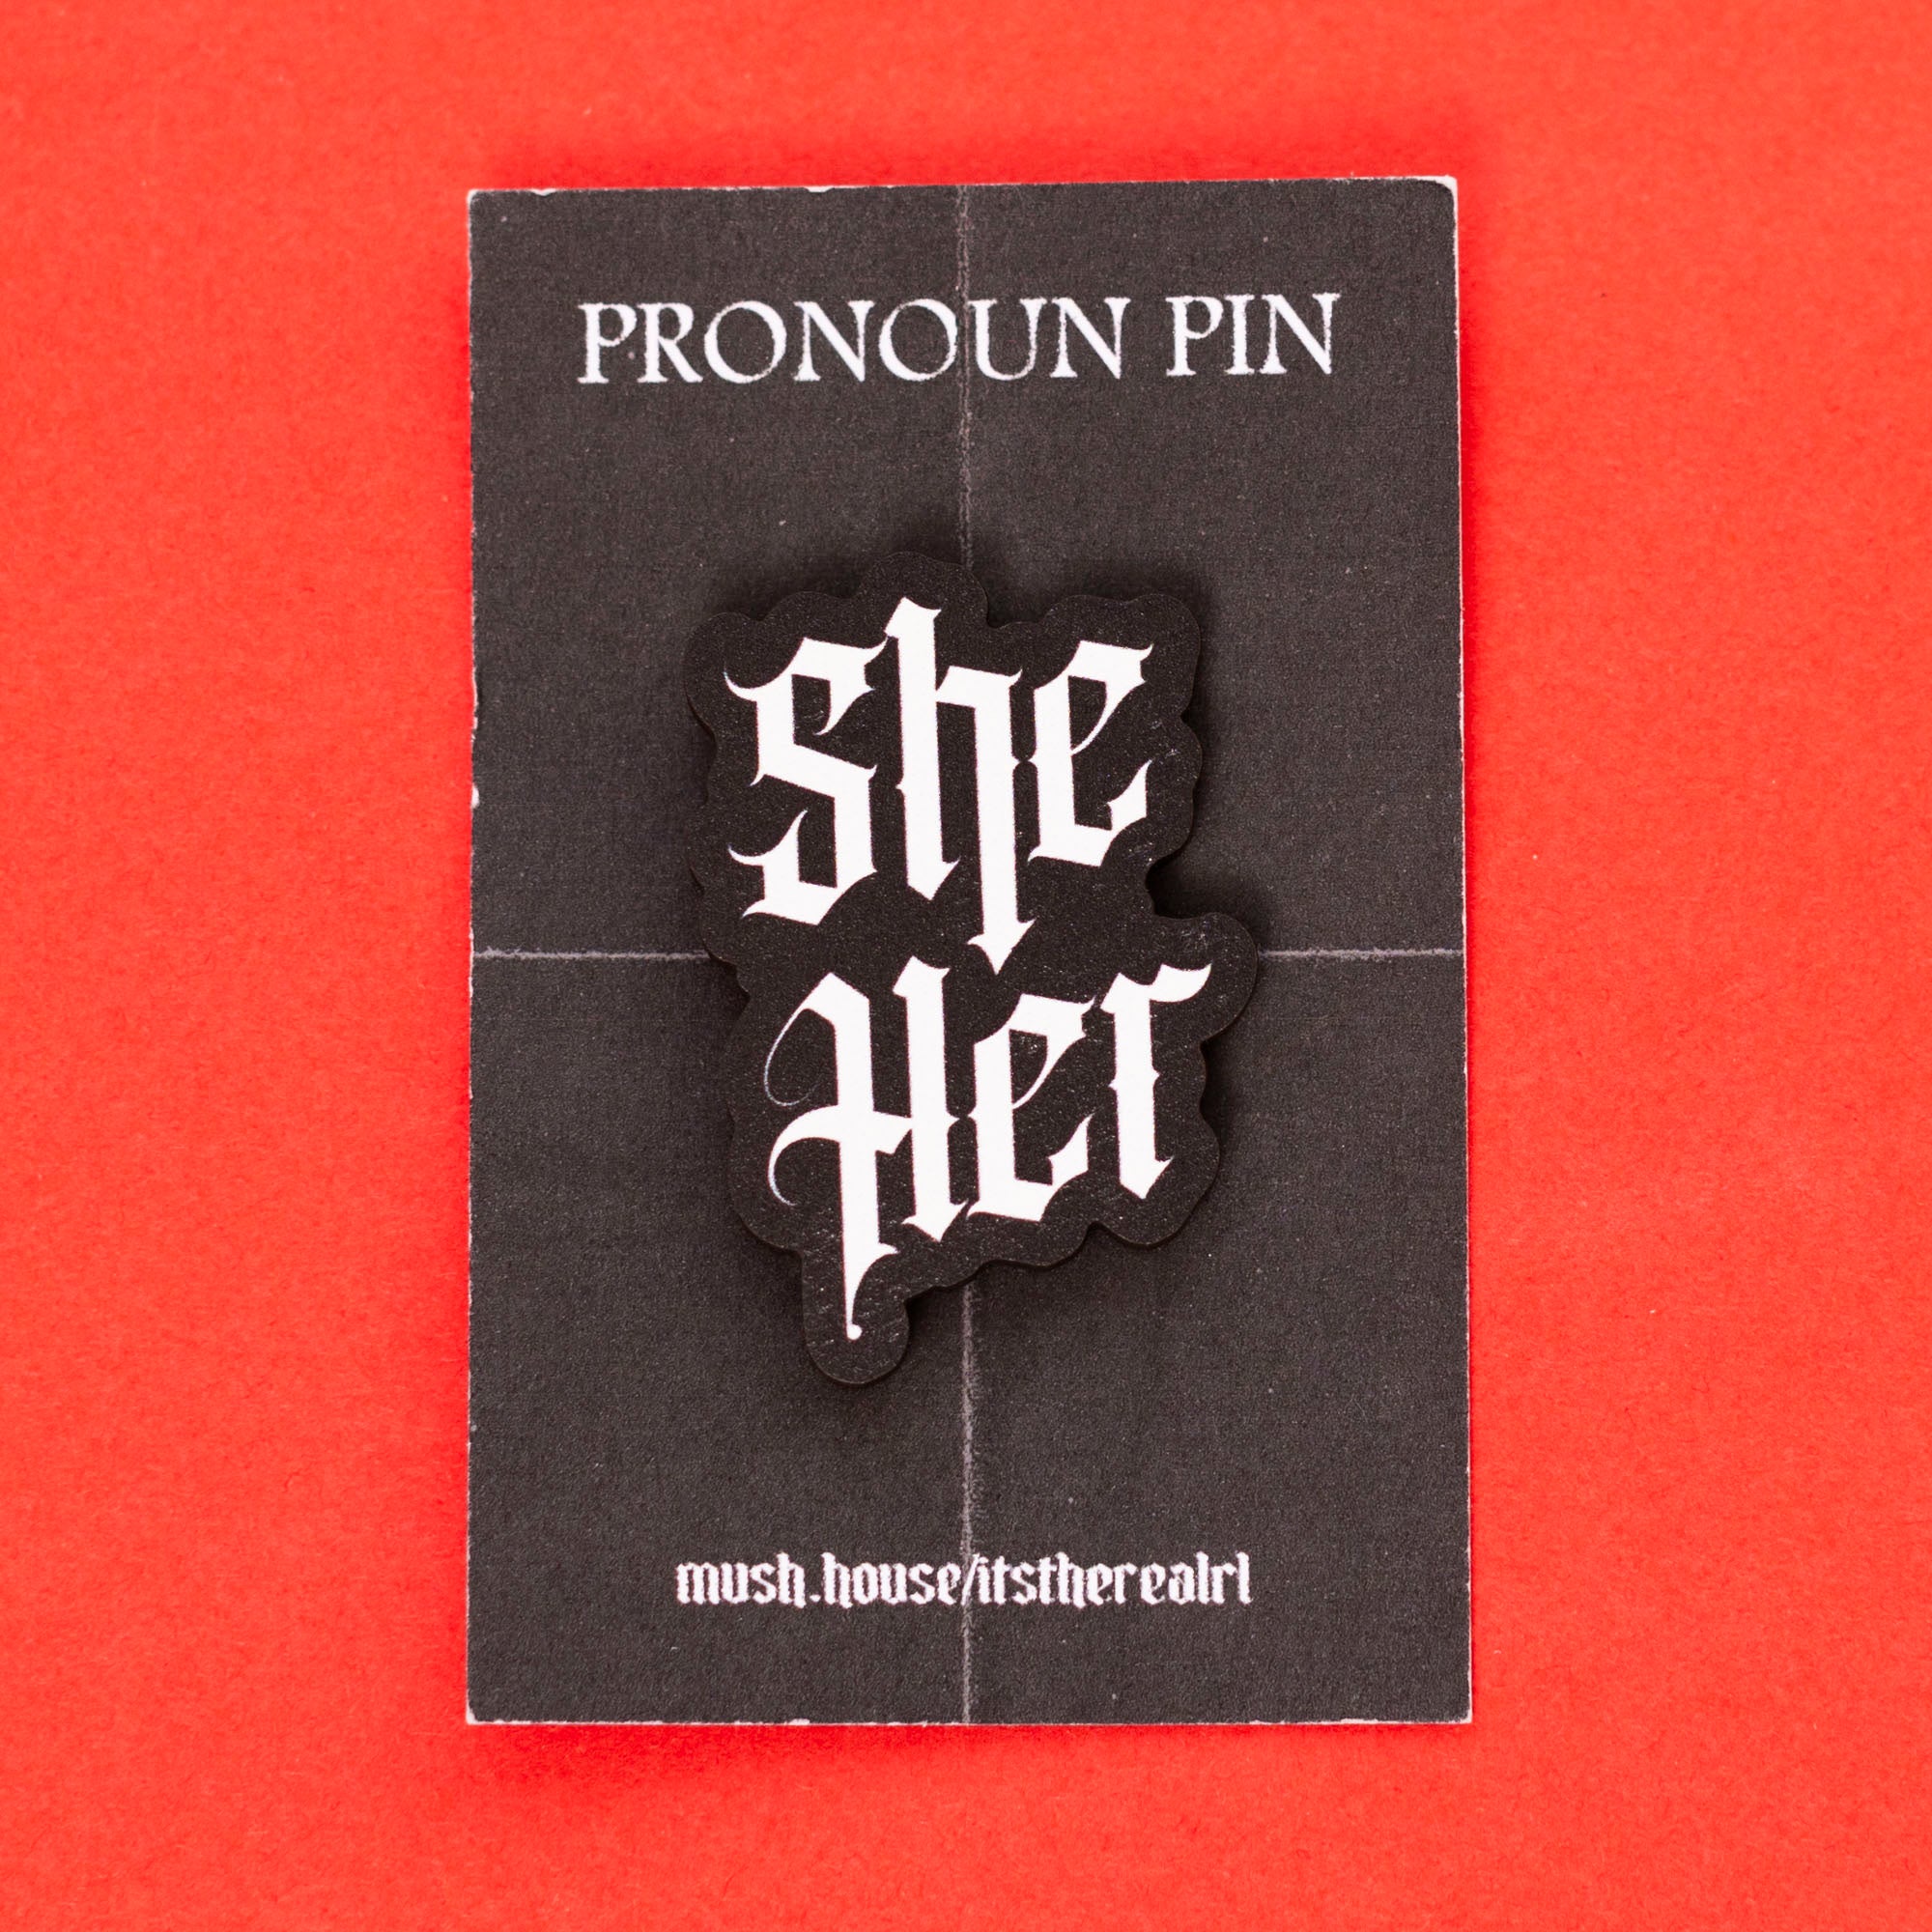 She / Her Gothic Pronoun Pin